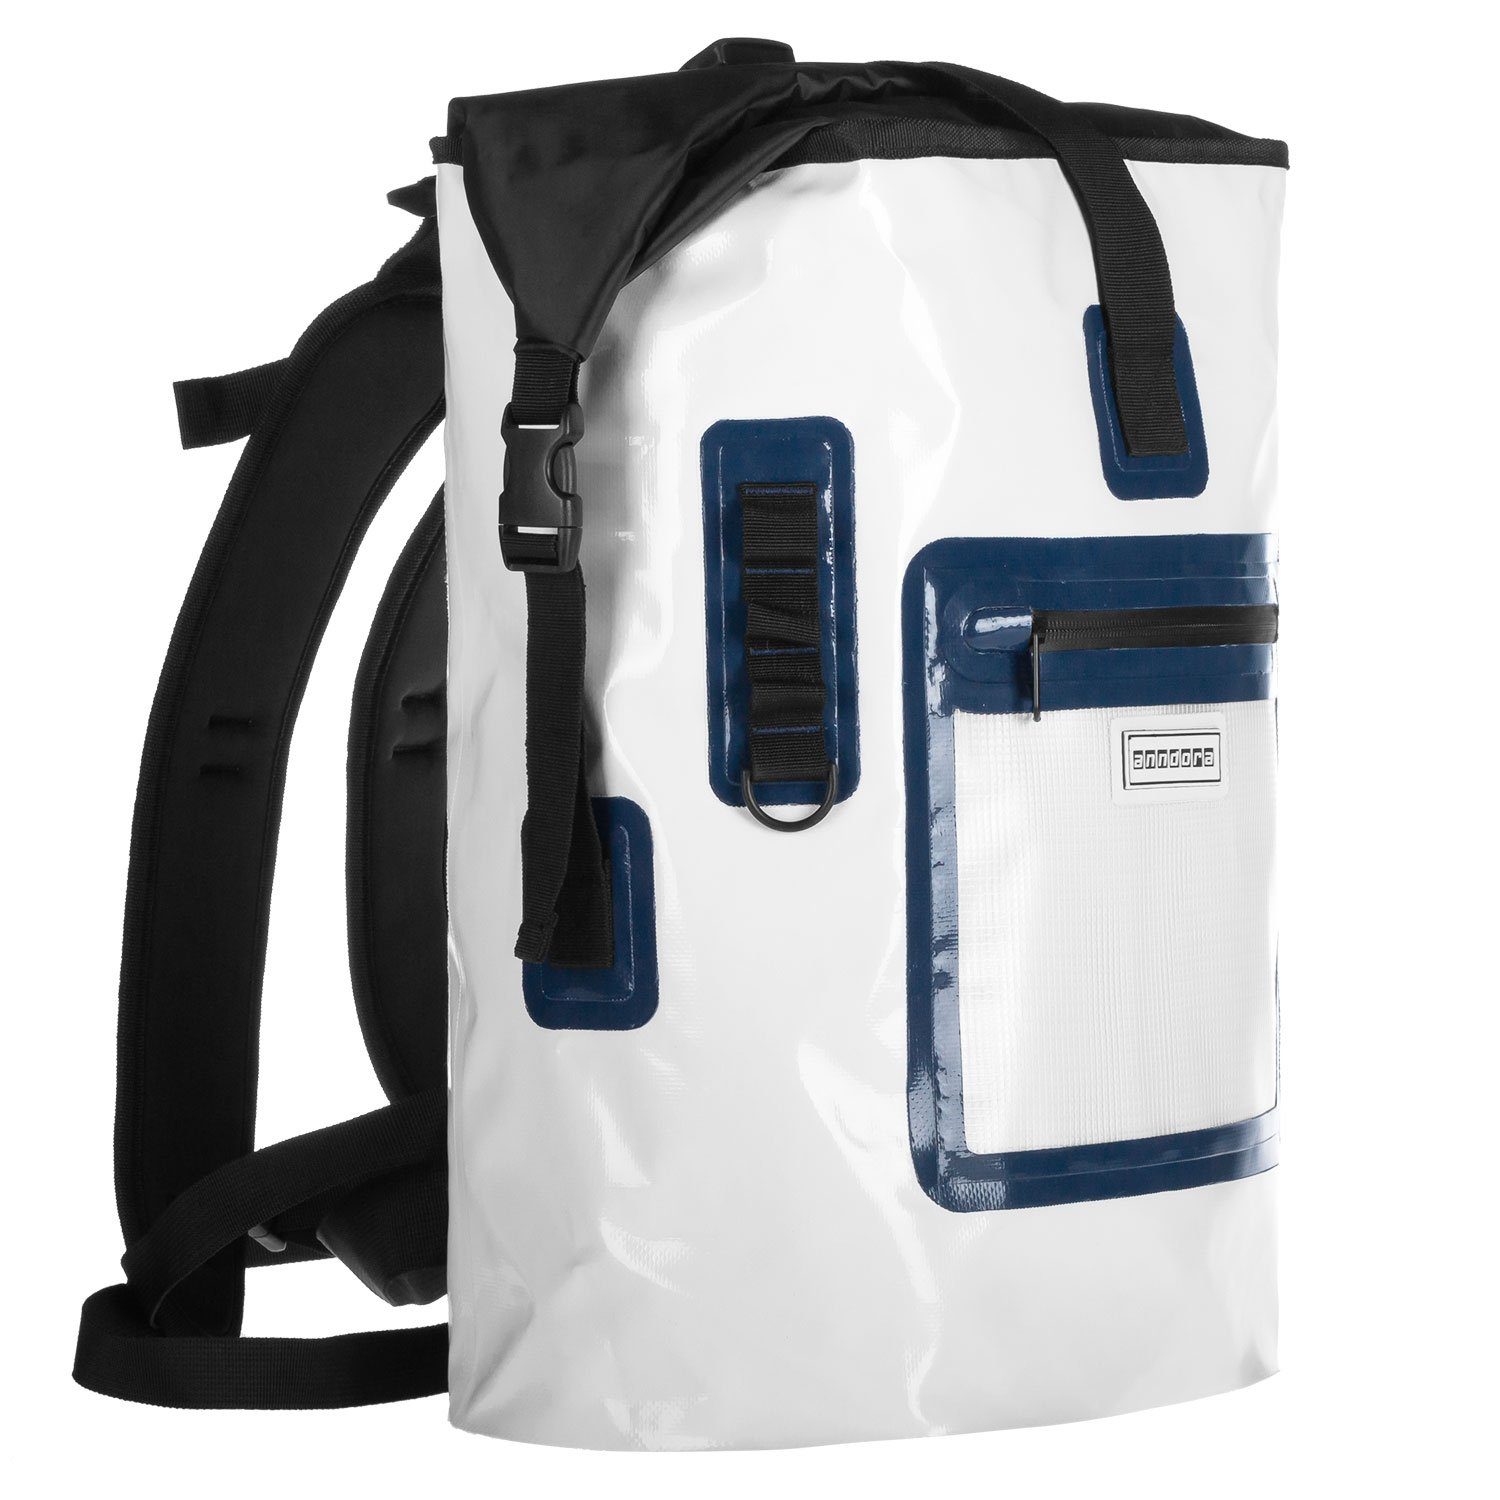 anndora Freizeitrucksack wasserfest ergonomisch 68x46x47 Rucksack DryBag Weiß größenregulierbar